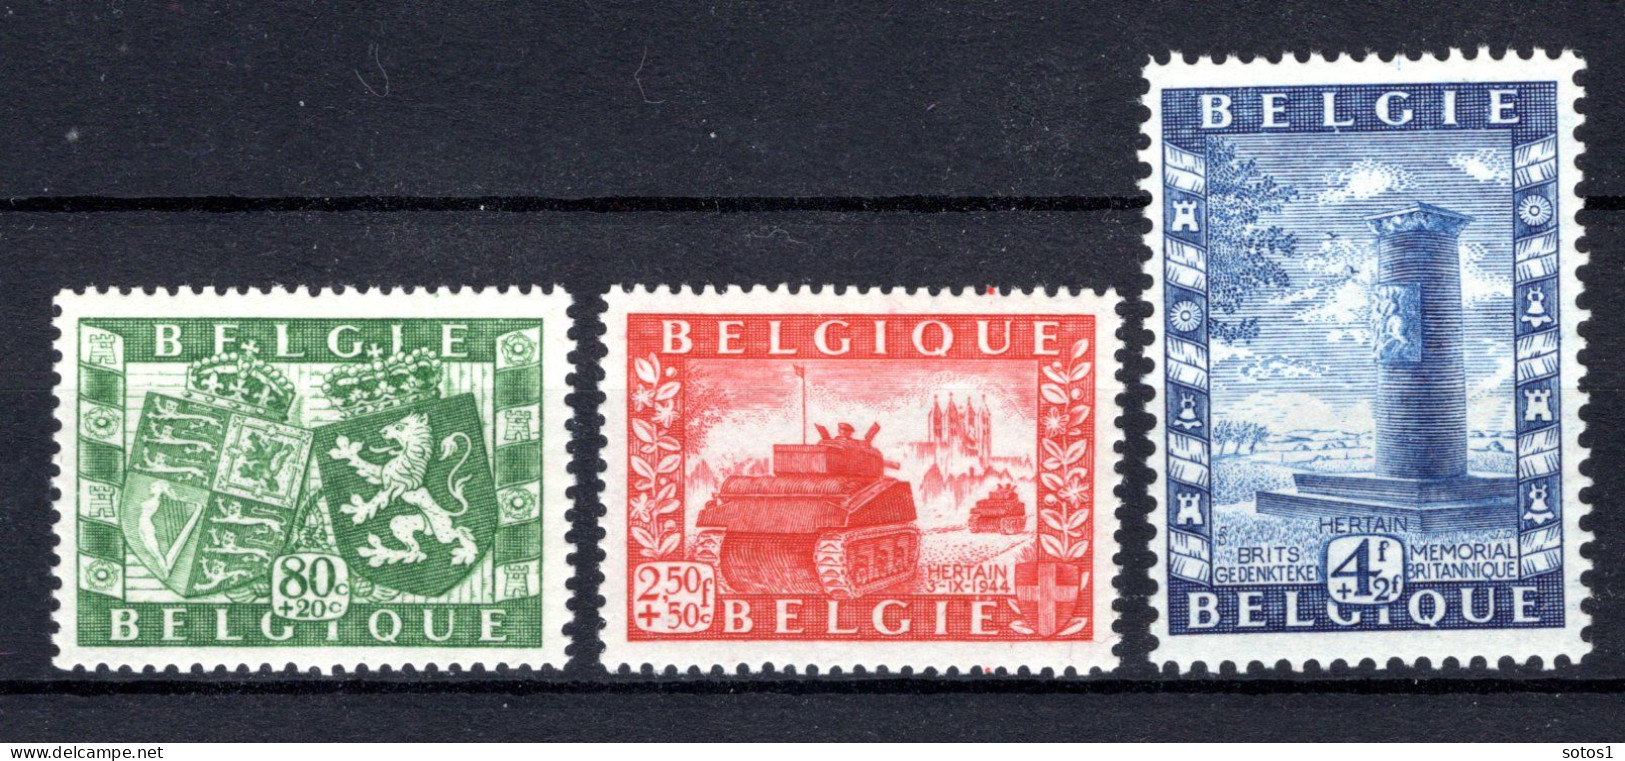 823/825 MNH 1950 - Genootschap België - Groot-Brittannië. - Neufs